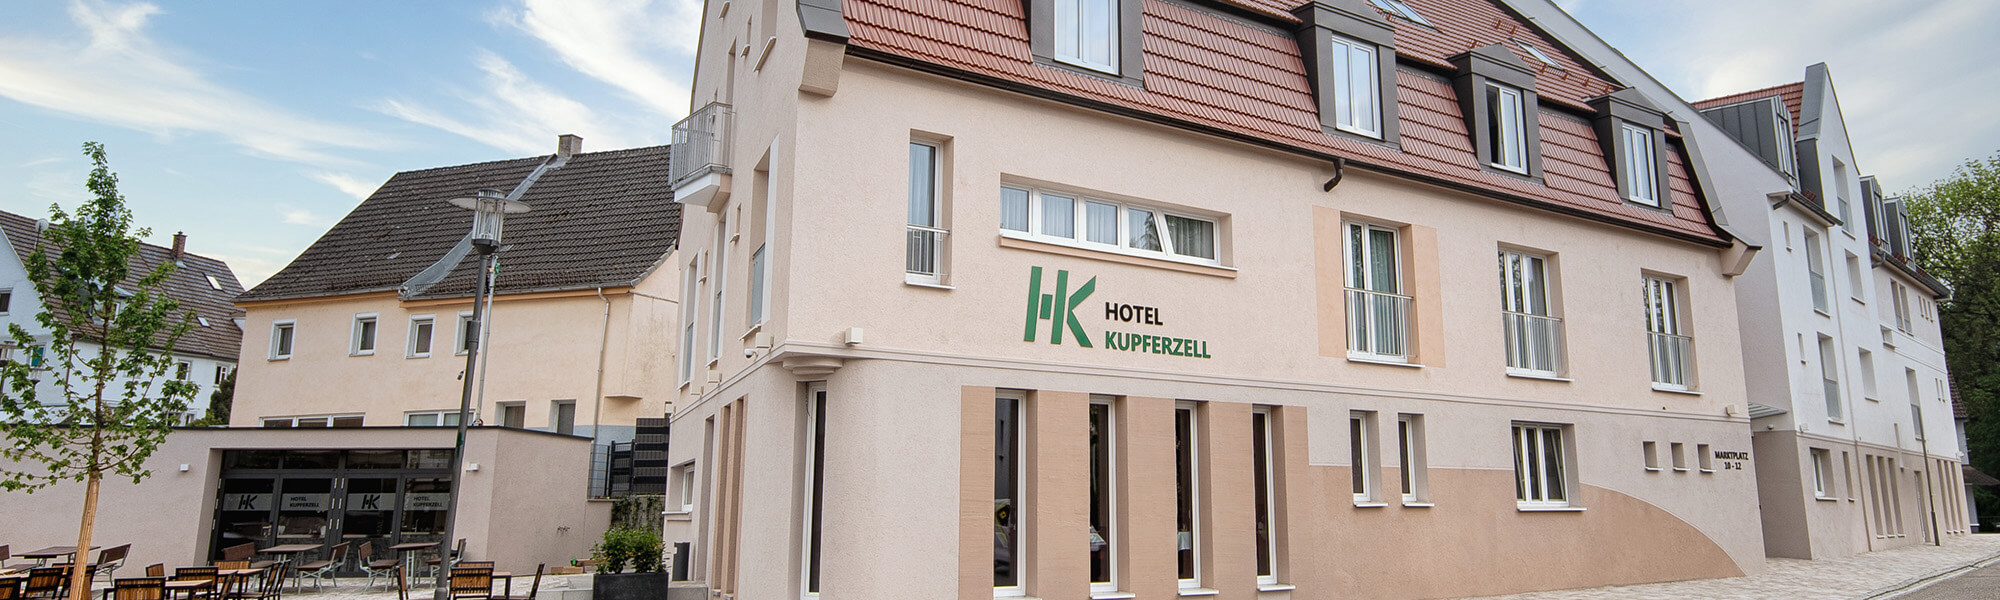 4 Sterne Hotel Kupferzell - Ihr Zuhause mitten in Hohenlohe